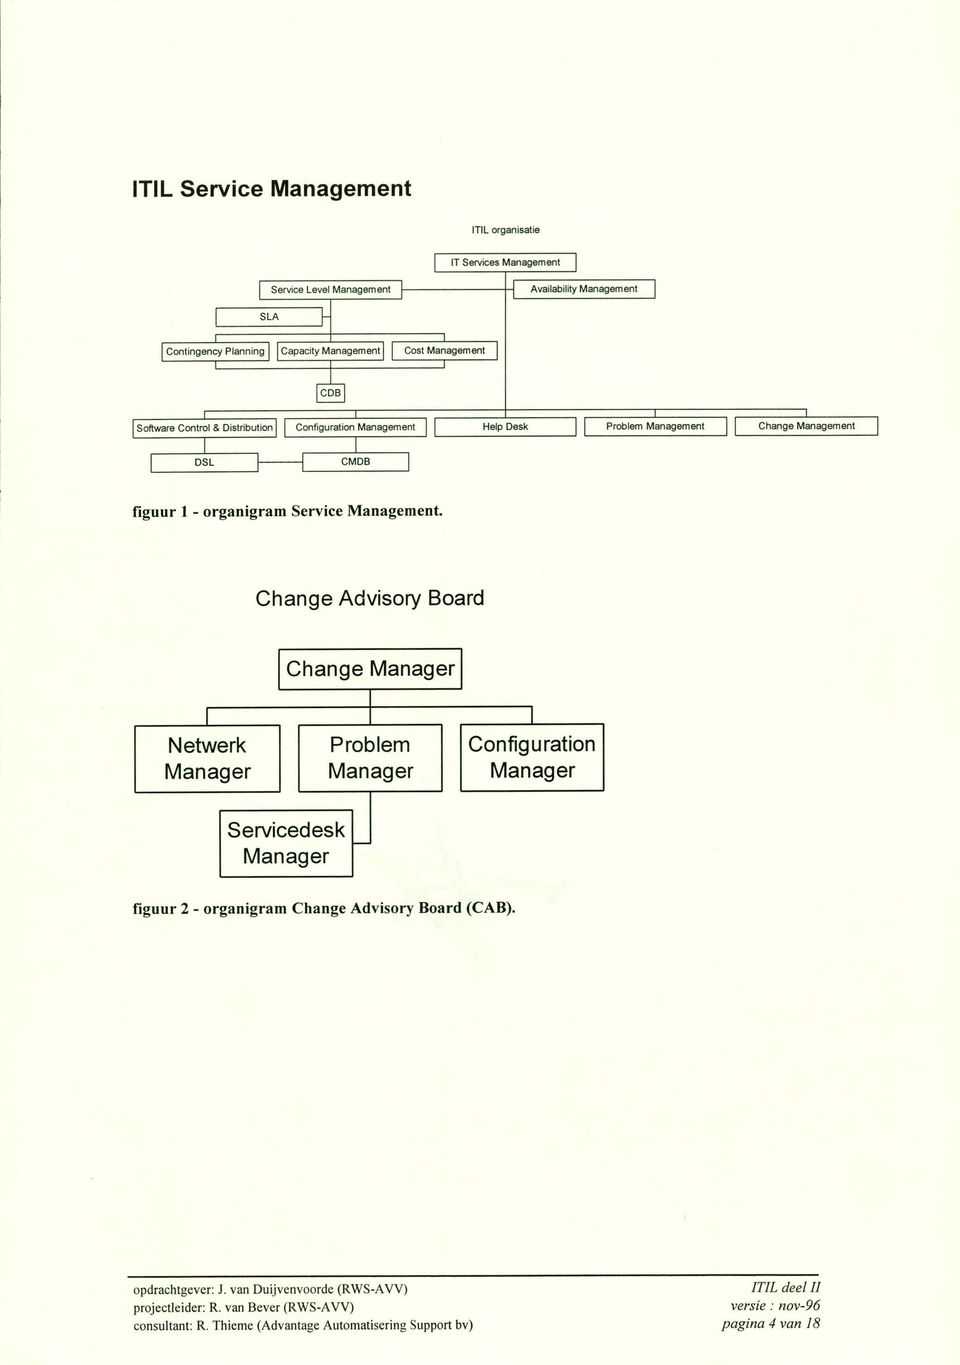 figuur 1 - organigram Service Management.